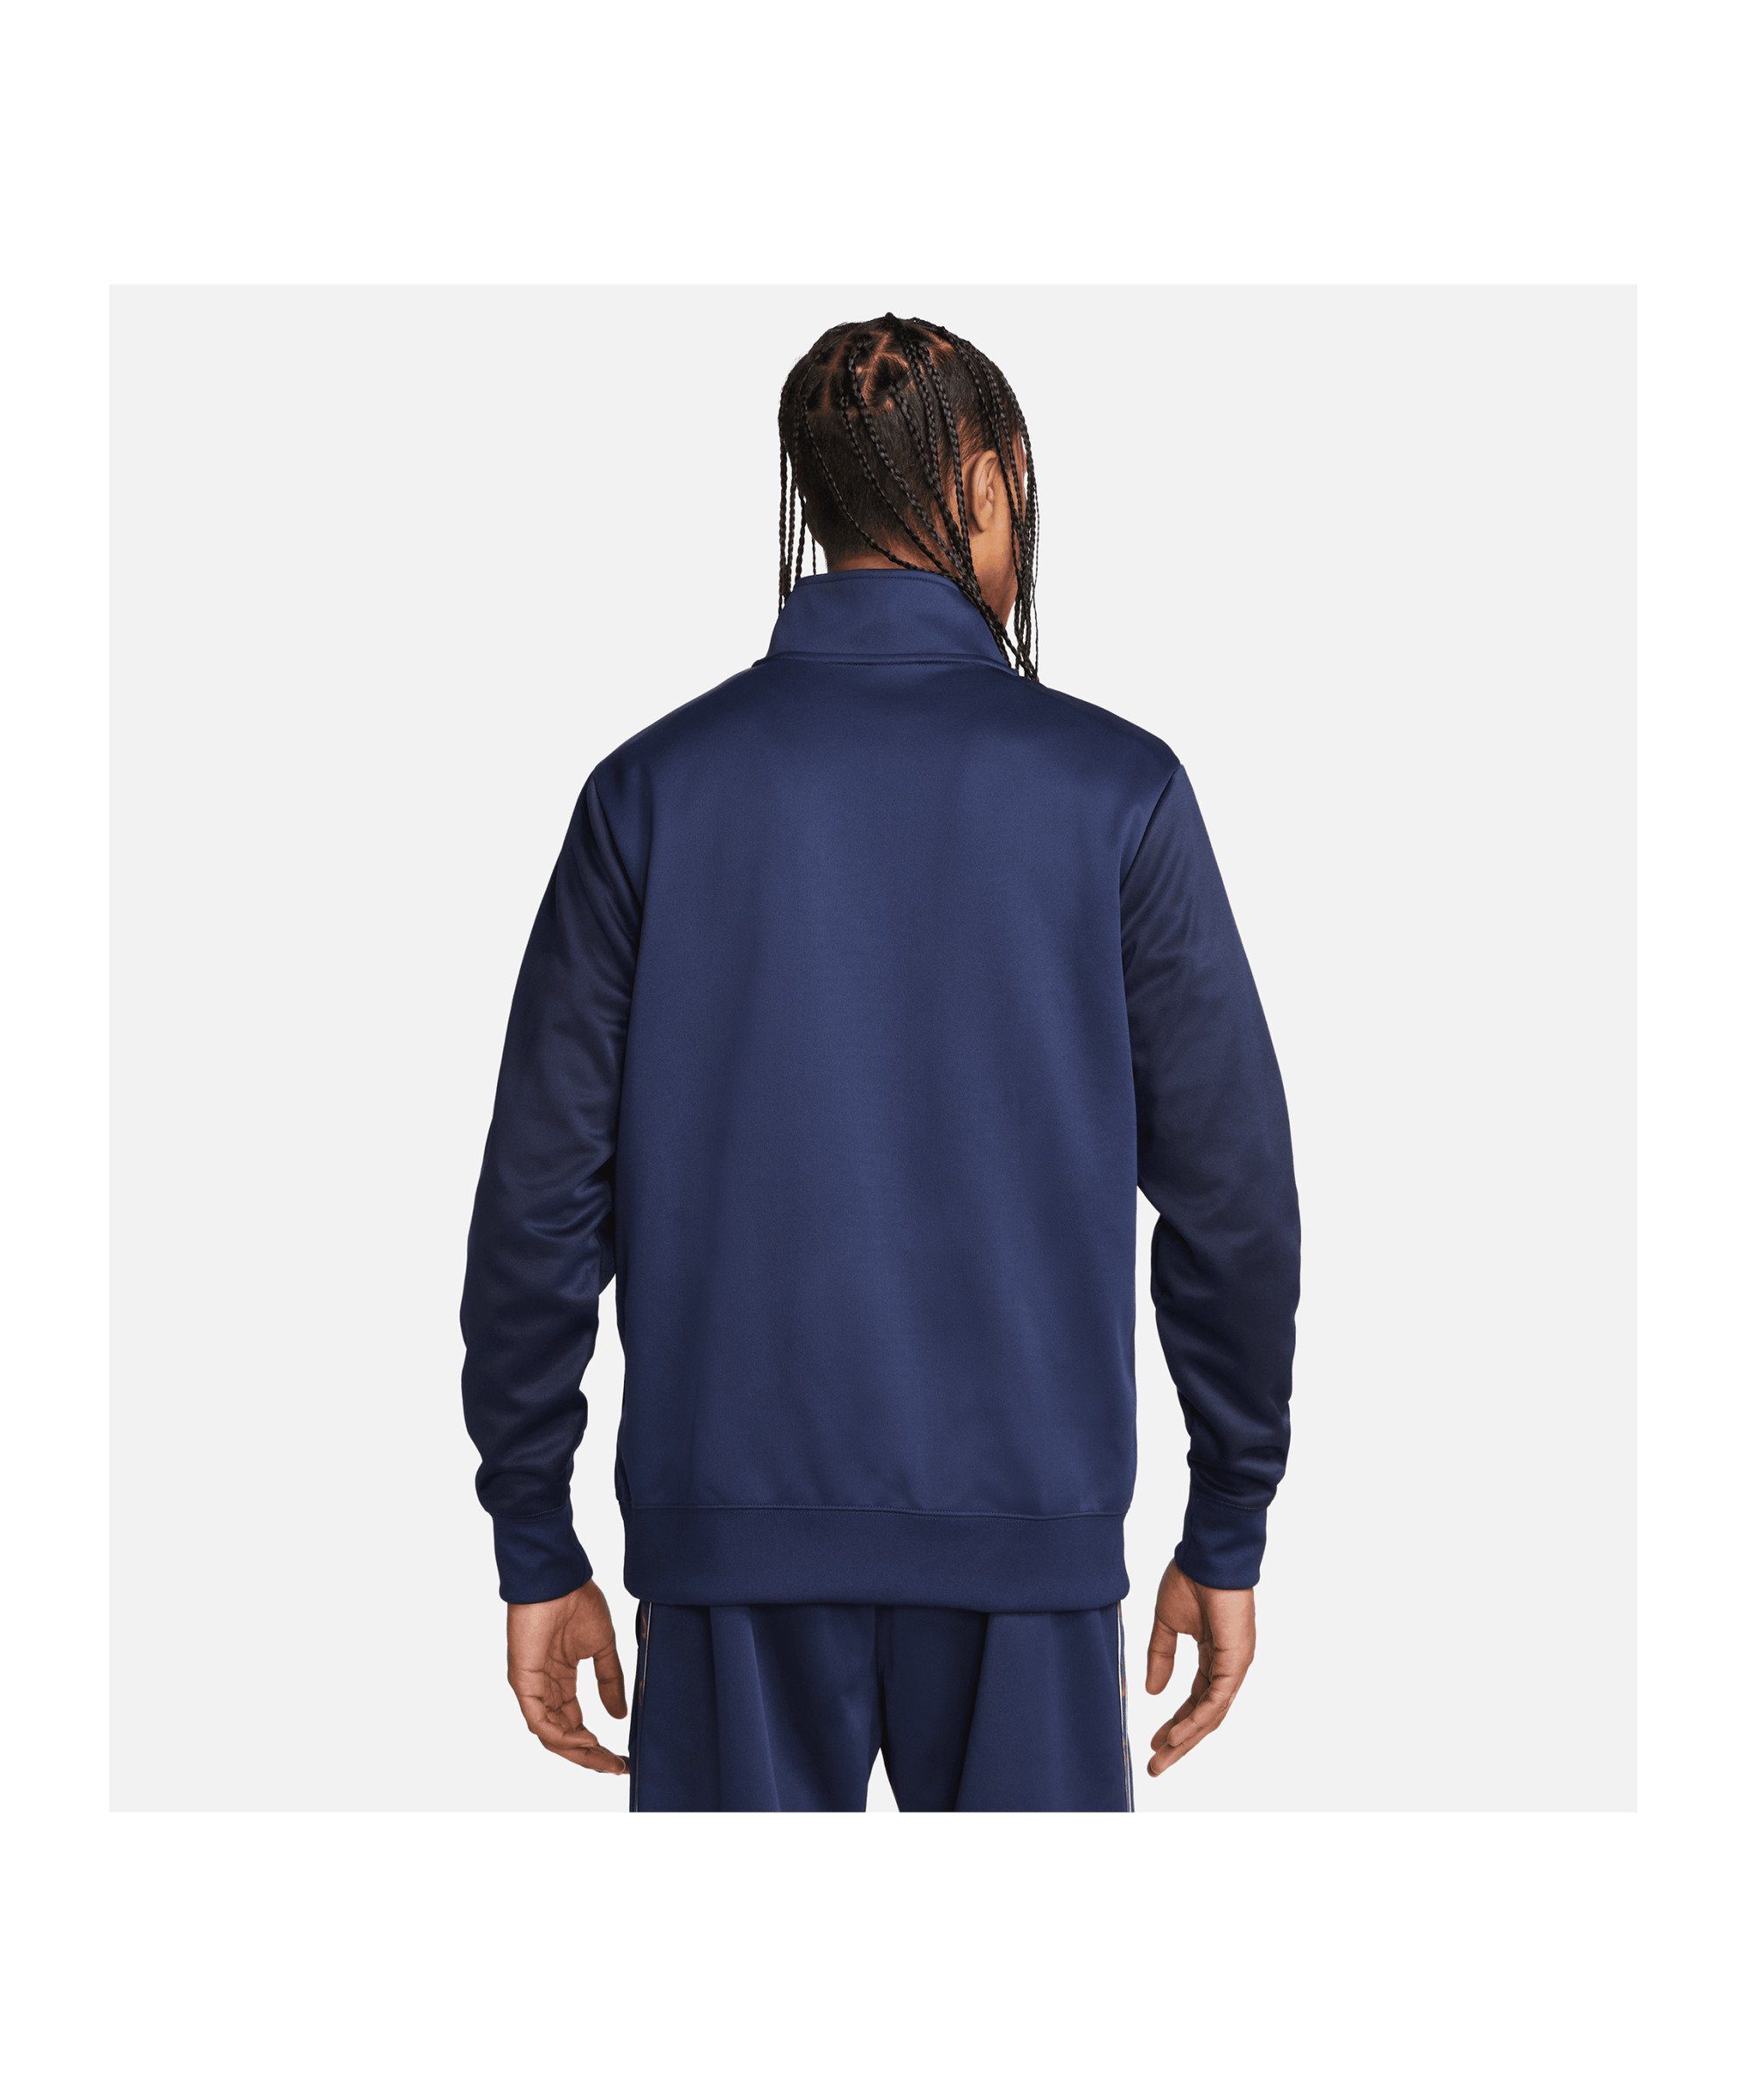 Sportswear Sweatshirt Repeat Sweatshirt blaublaurot Nike HalfZip